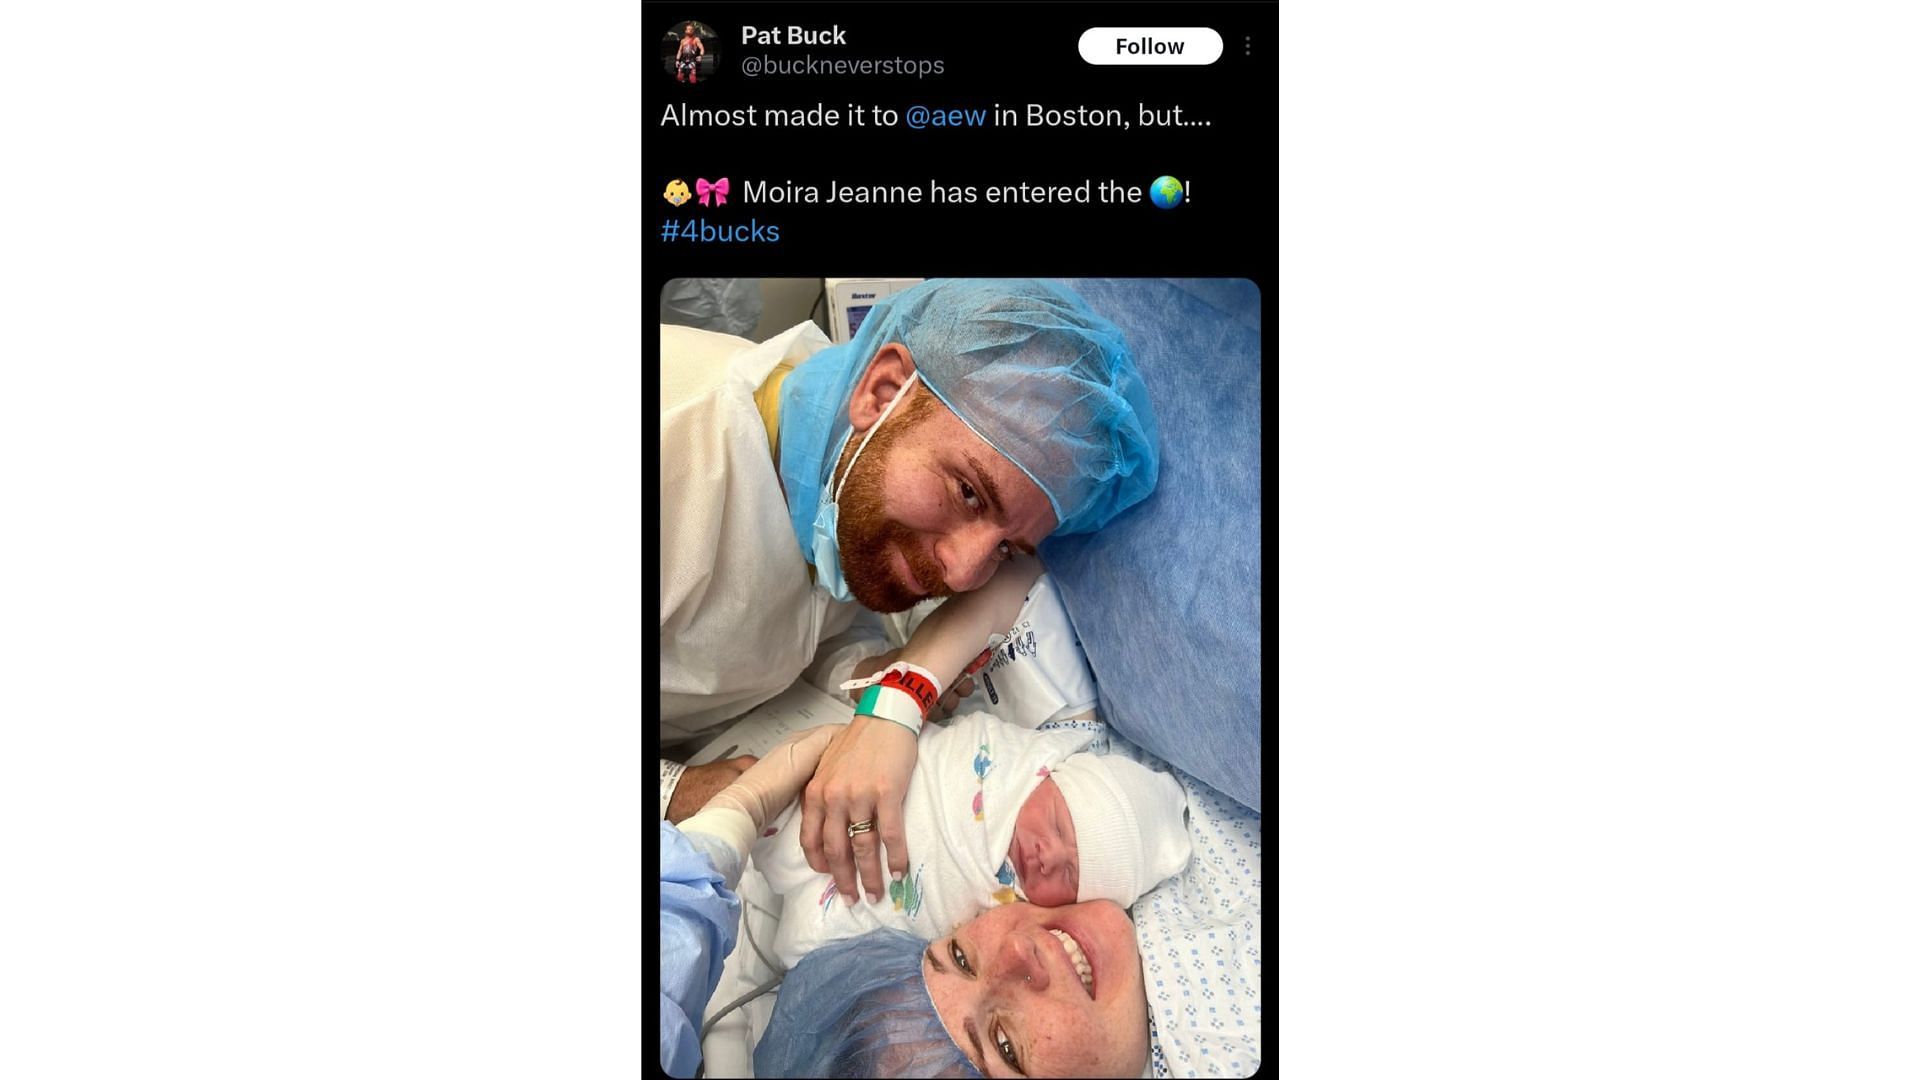 Pat Buck welcomes his newborn baby girl.